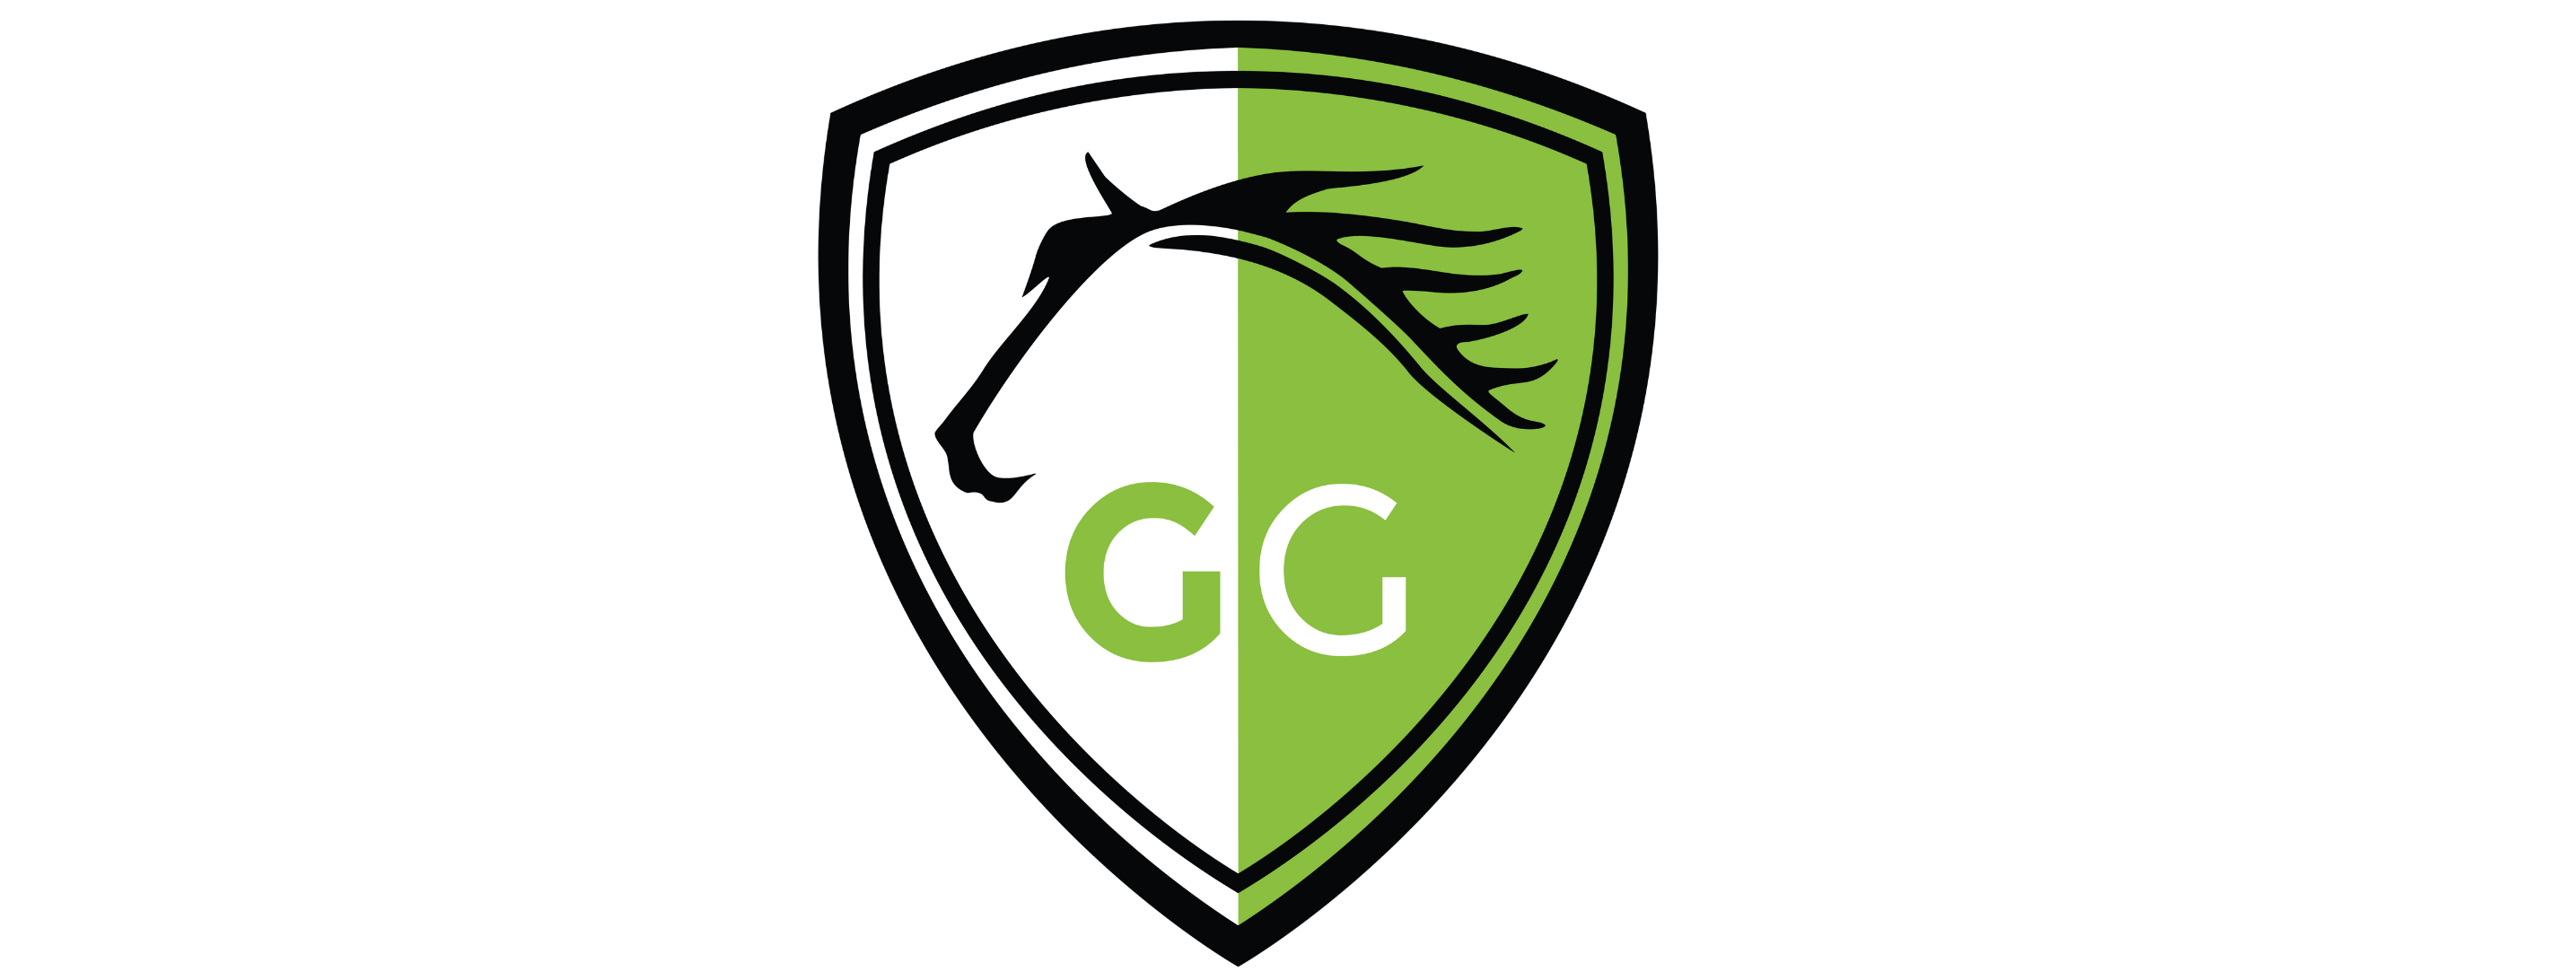 GG Equine  logo